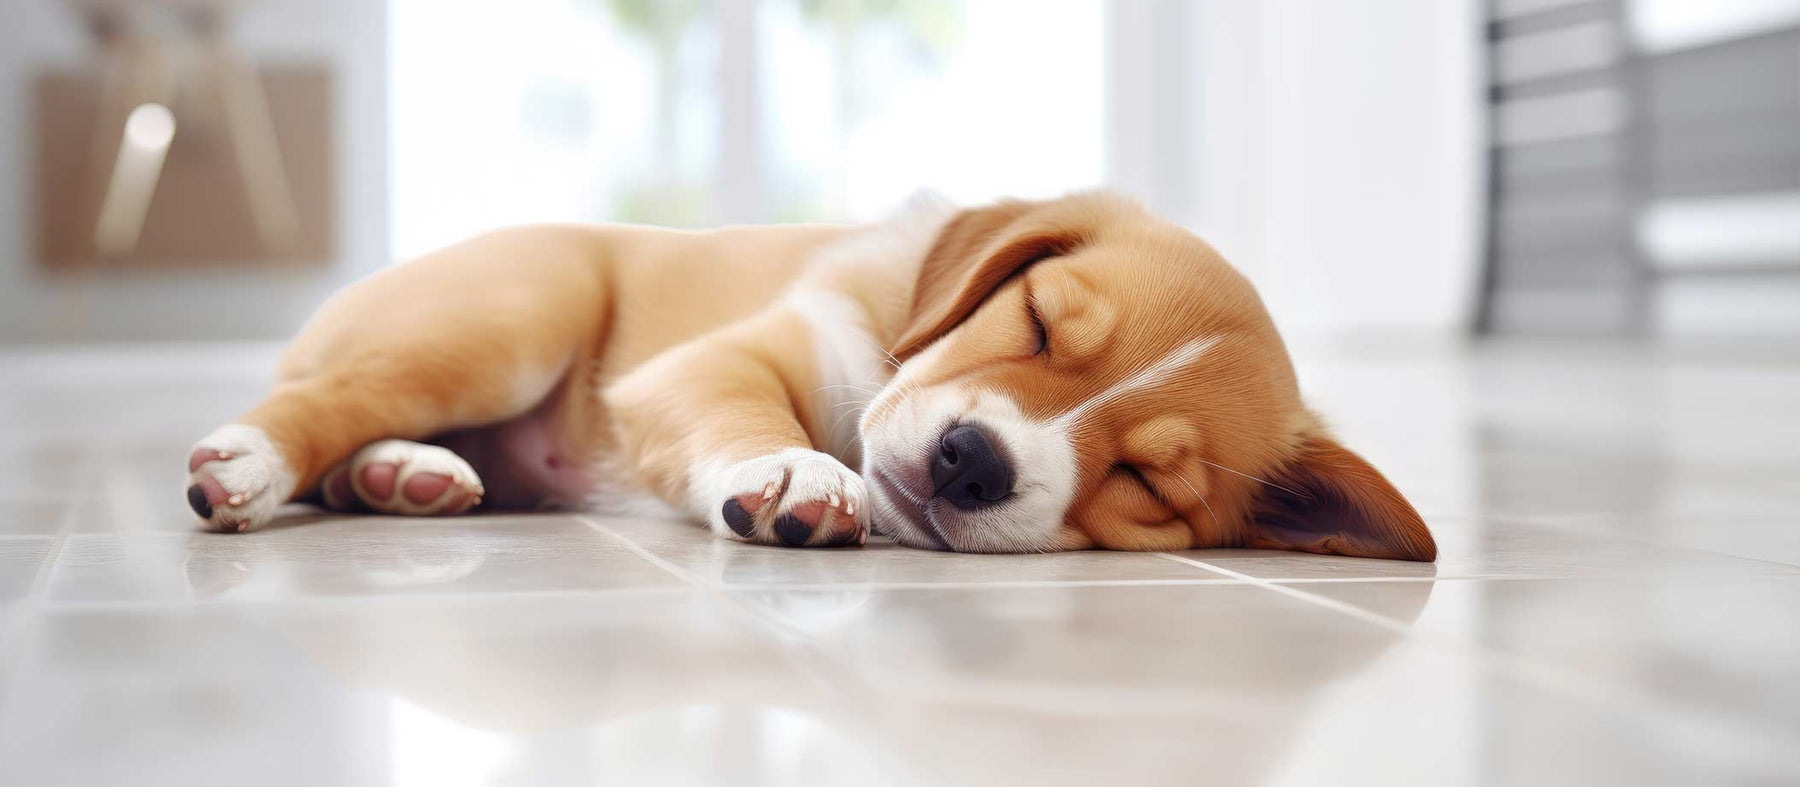 sleeping dog on kitchen tiles